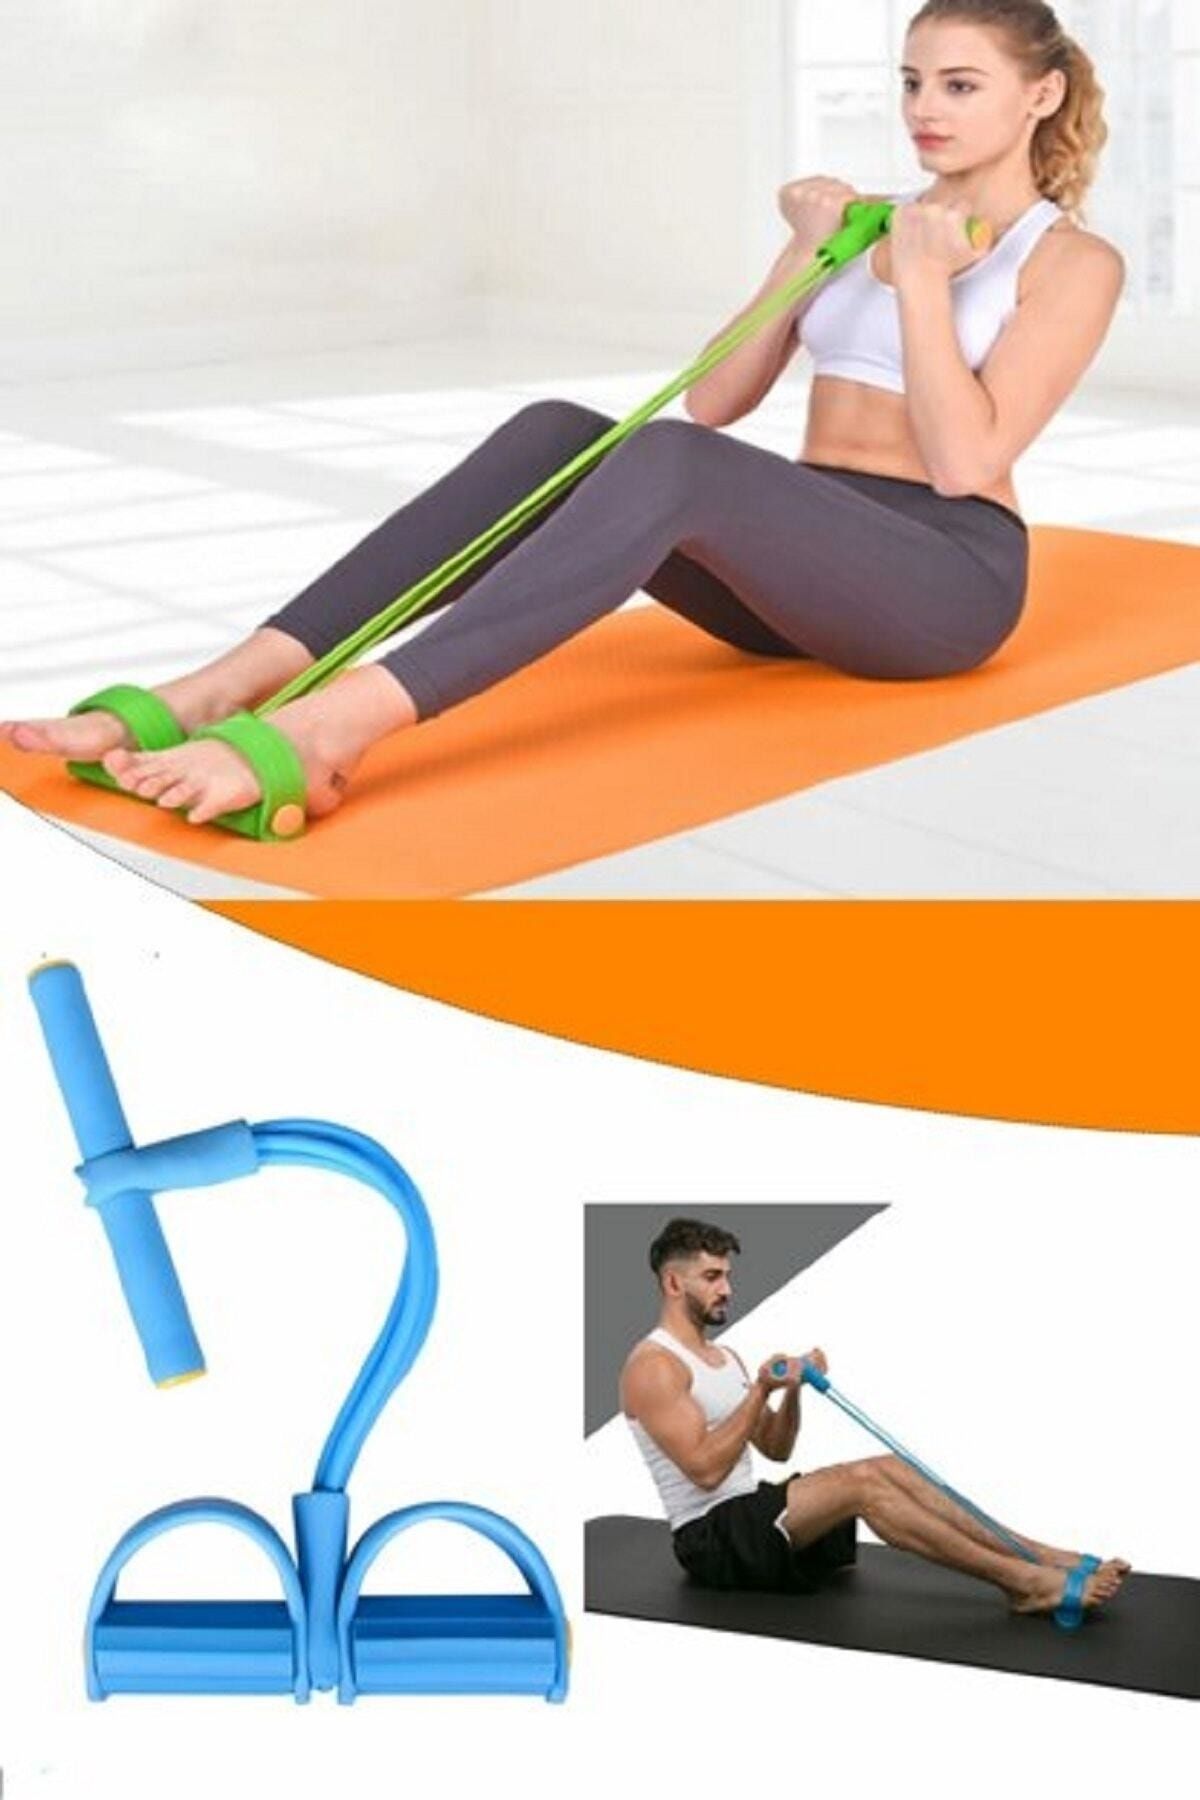 Otantik Karın Kol Kalça Ayak Tüm Vücut Şekillendirme Body Trimmer Fitness Aerobik Jimnastik Spor Aleti